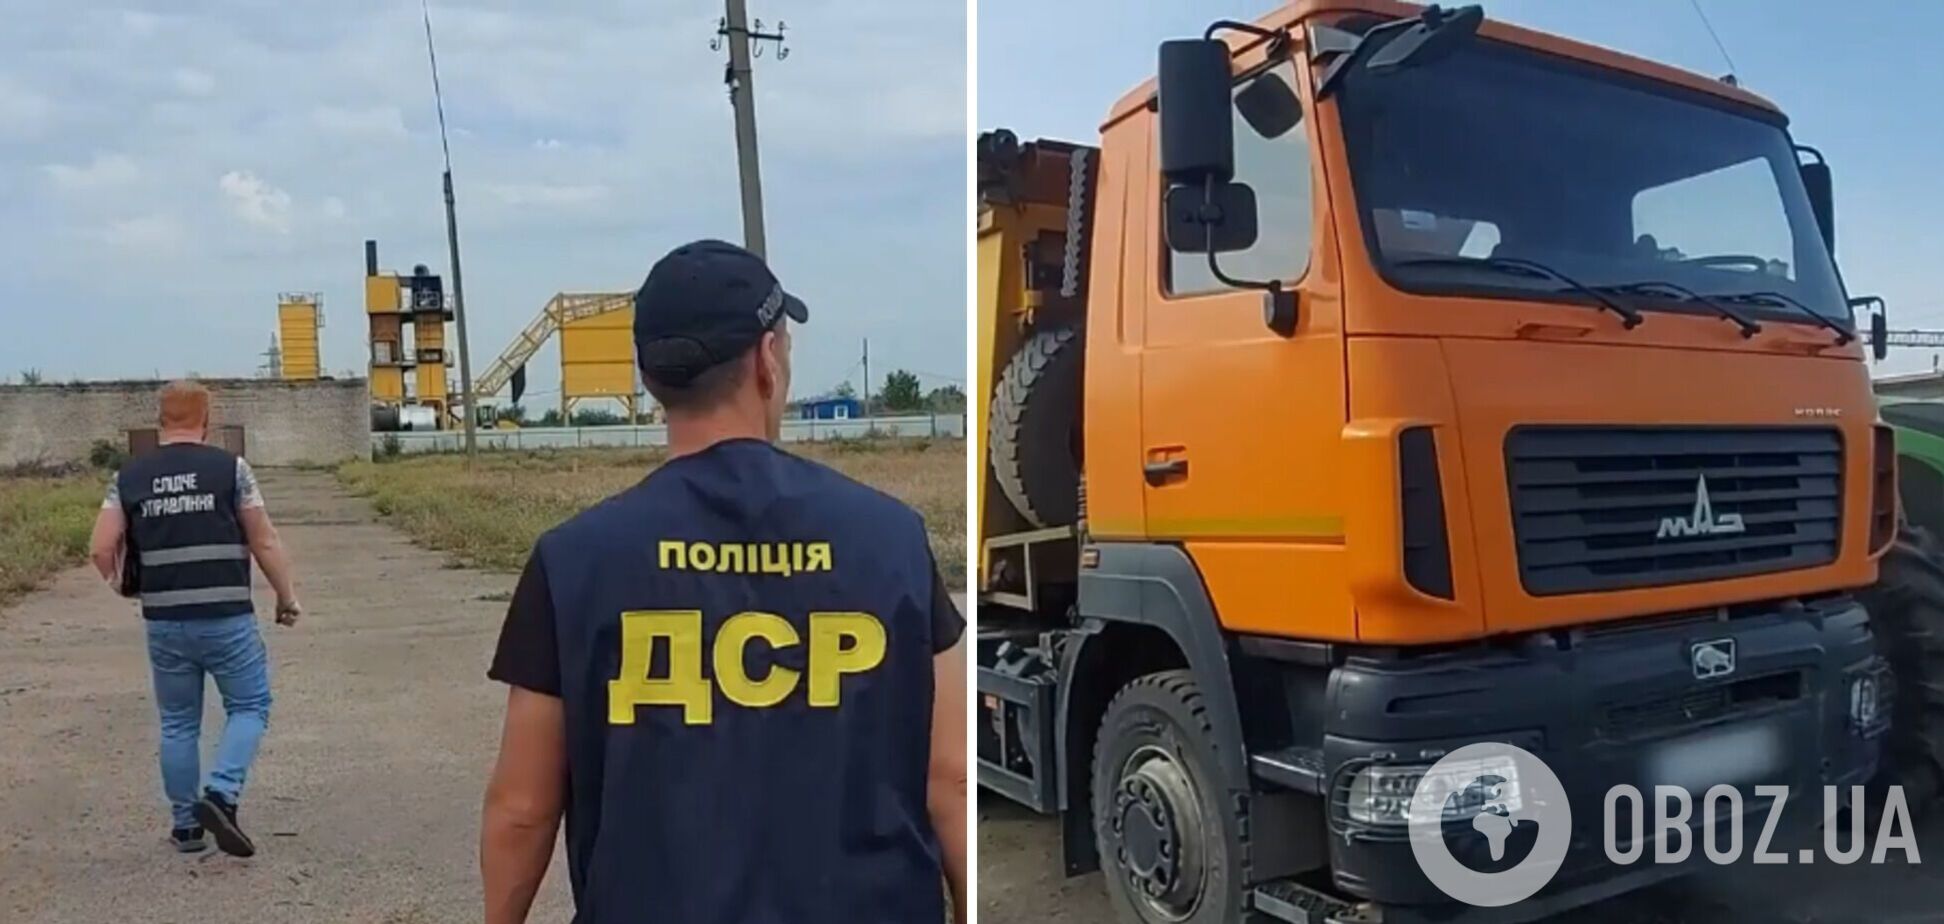 Имущество беларуских компаний поработает на Украину